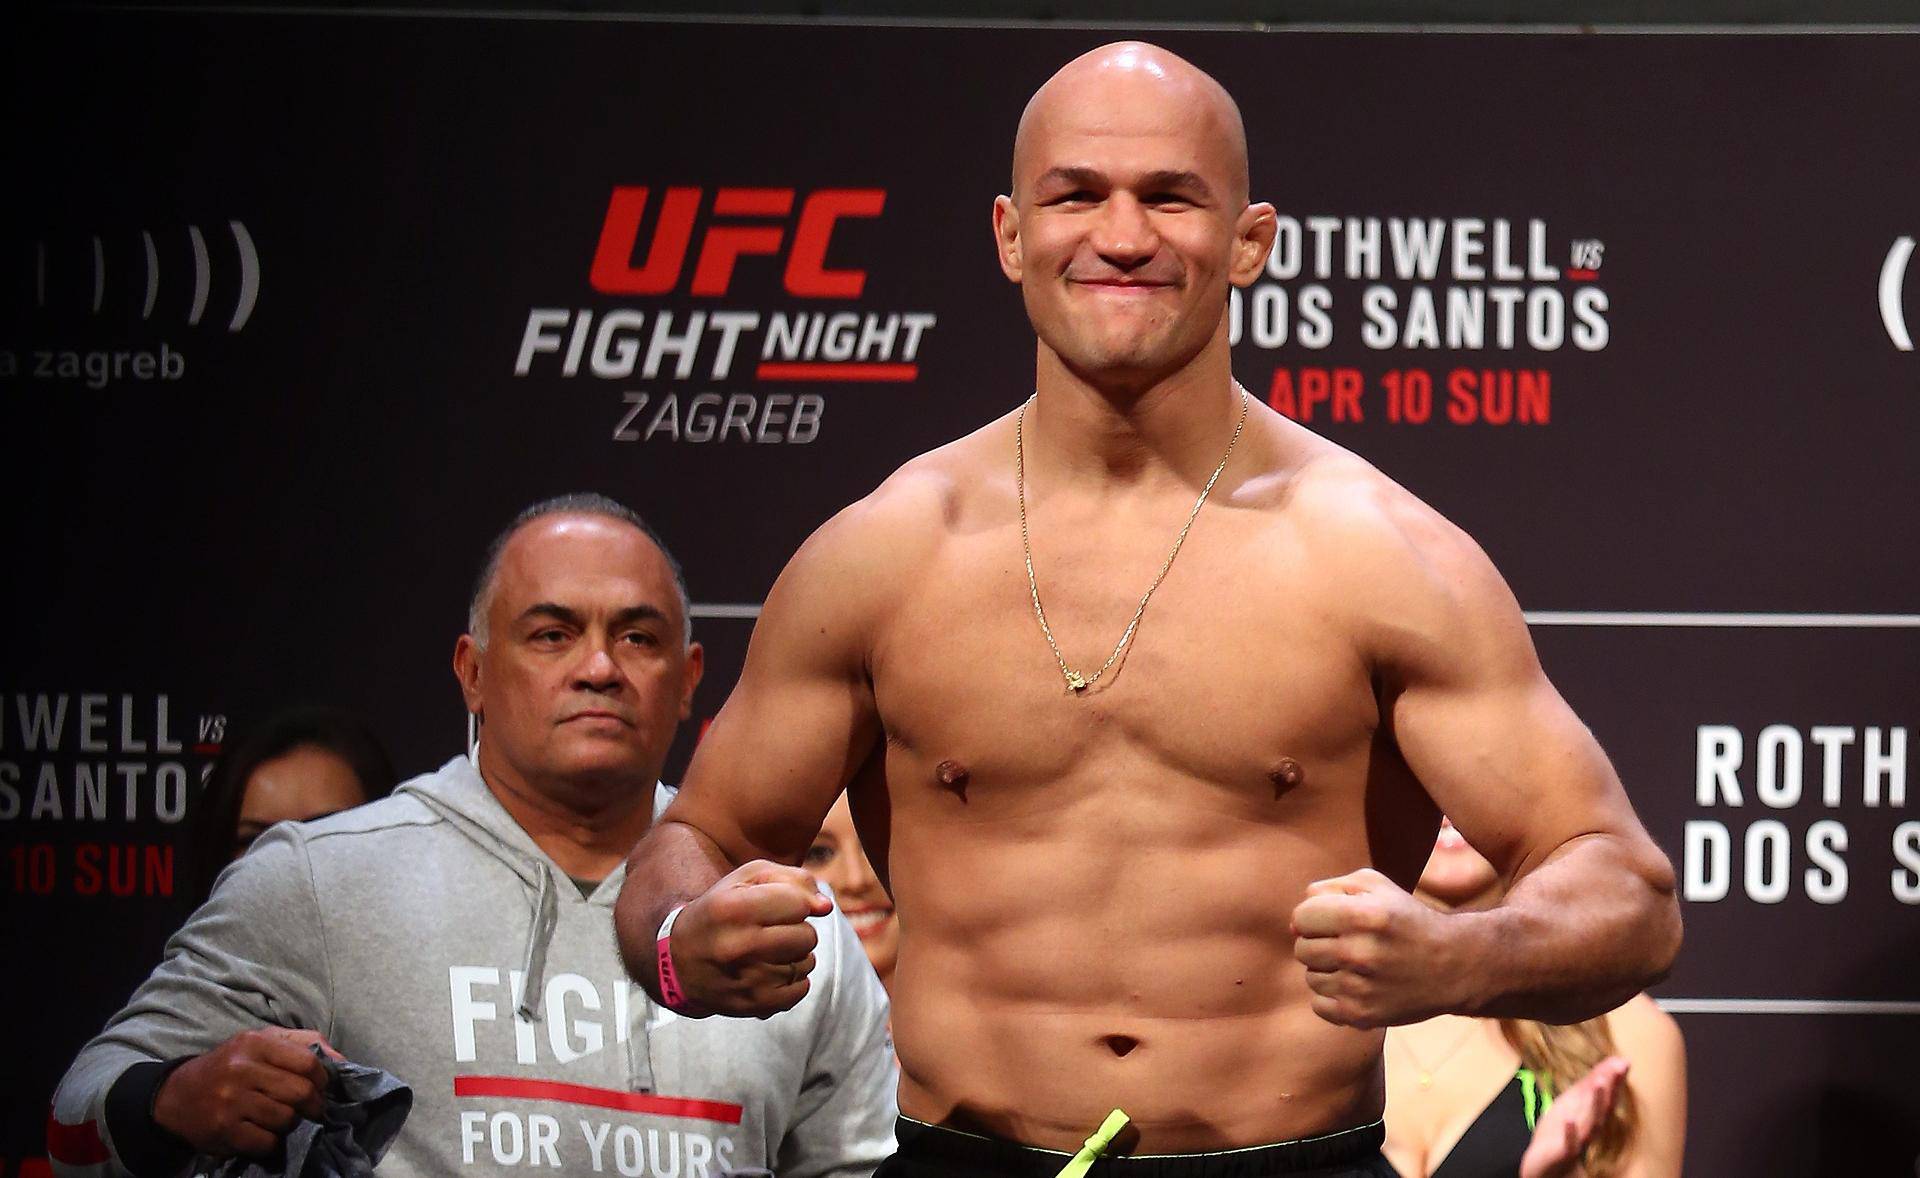 Šok u UFC svijetu: Dos Santos pao na nenajavljeno testiranje!